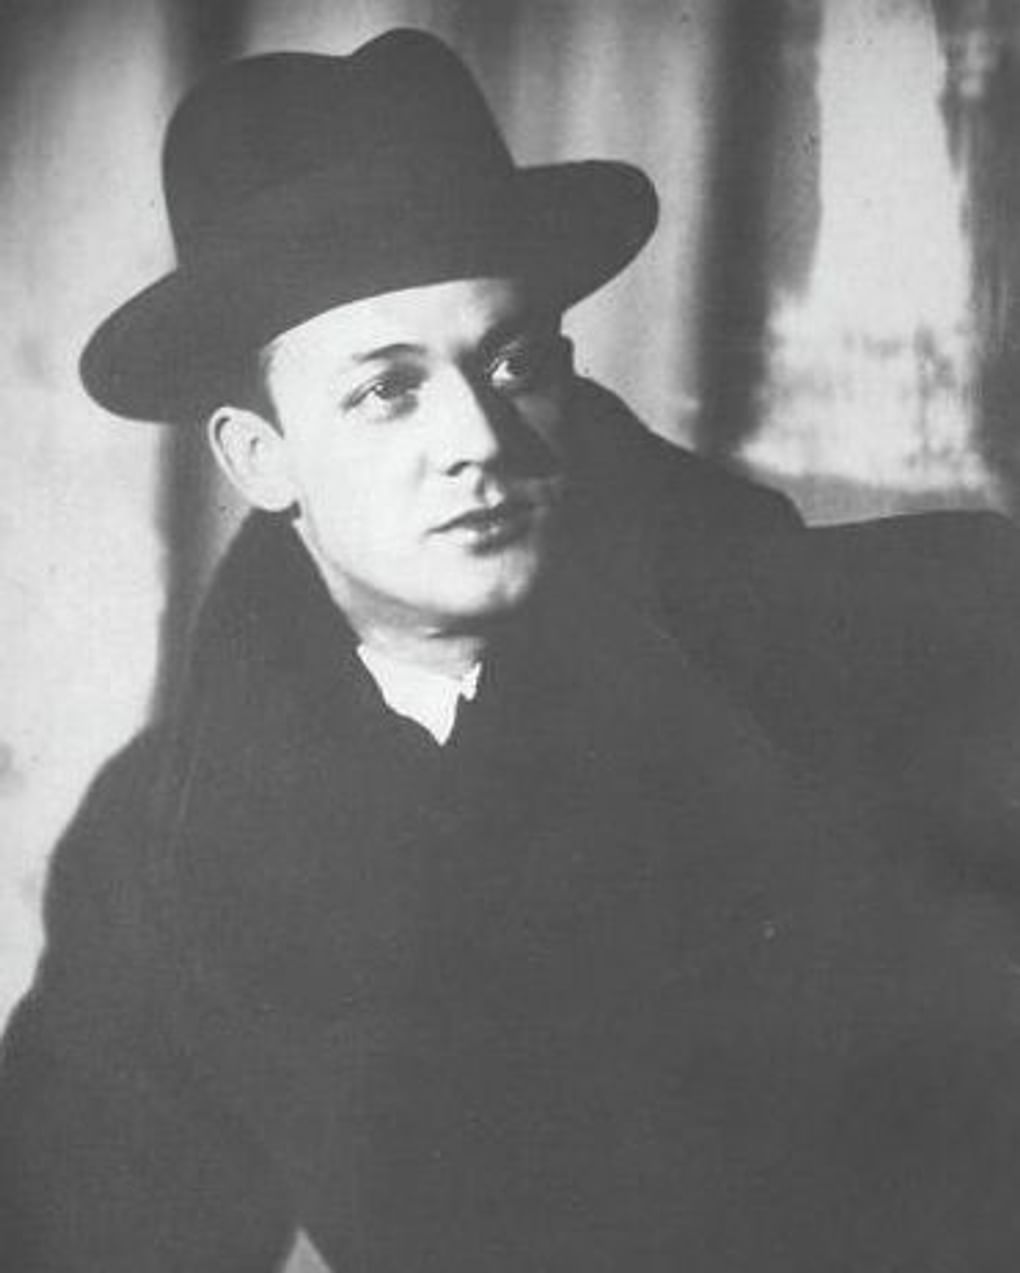 Сергей Лемешев. 1930-е годы. Фотография: Мультимедиа Арт Музей, Москва